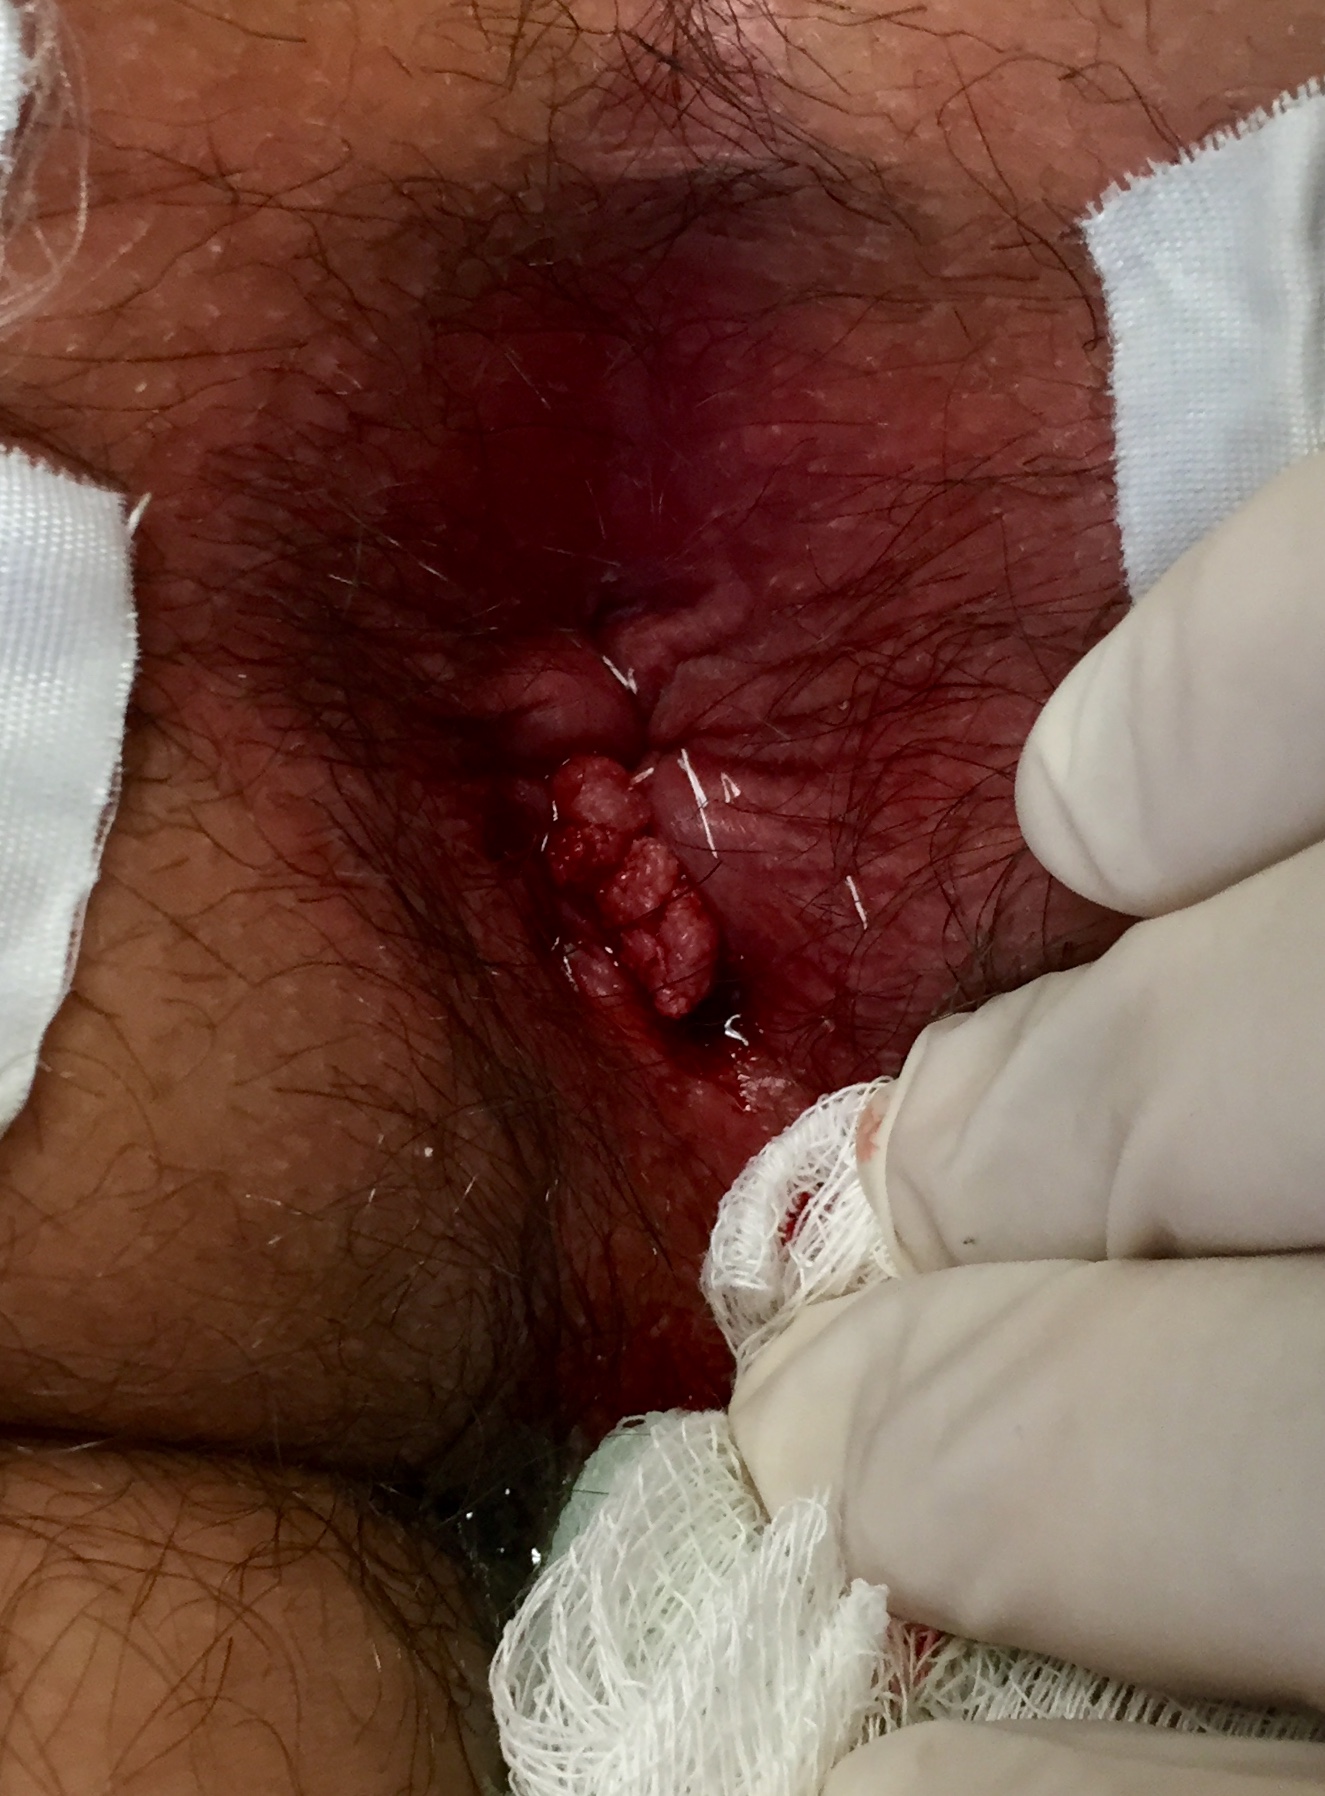 Lesiones verrugosas mucosa anorectal